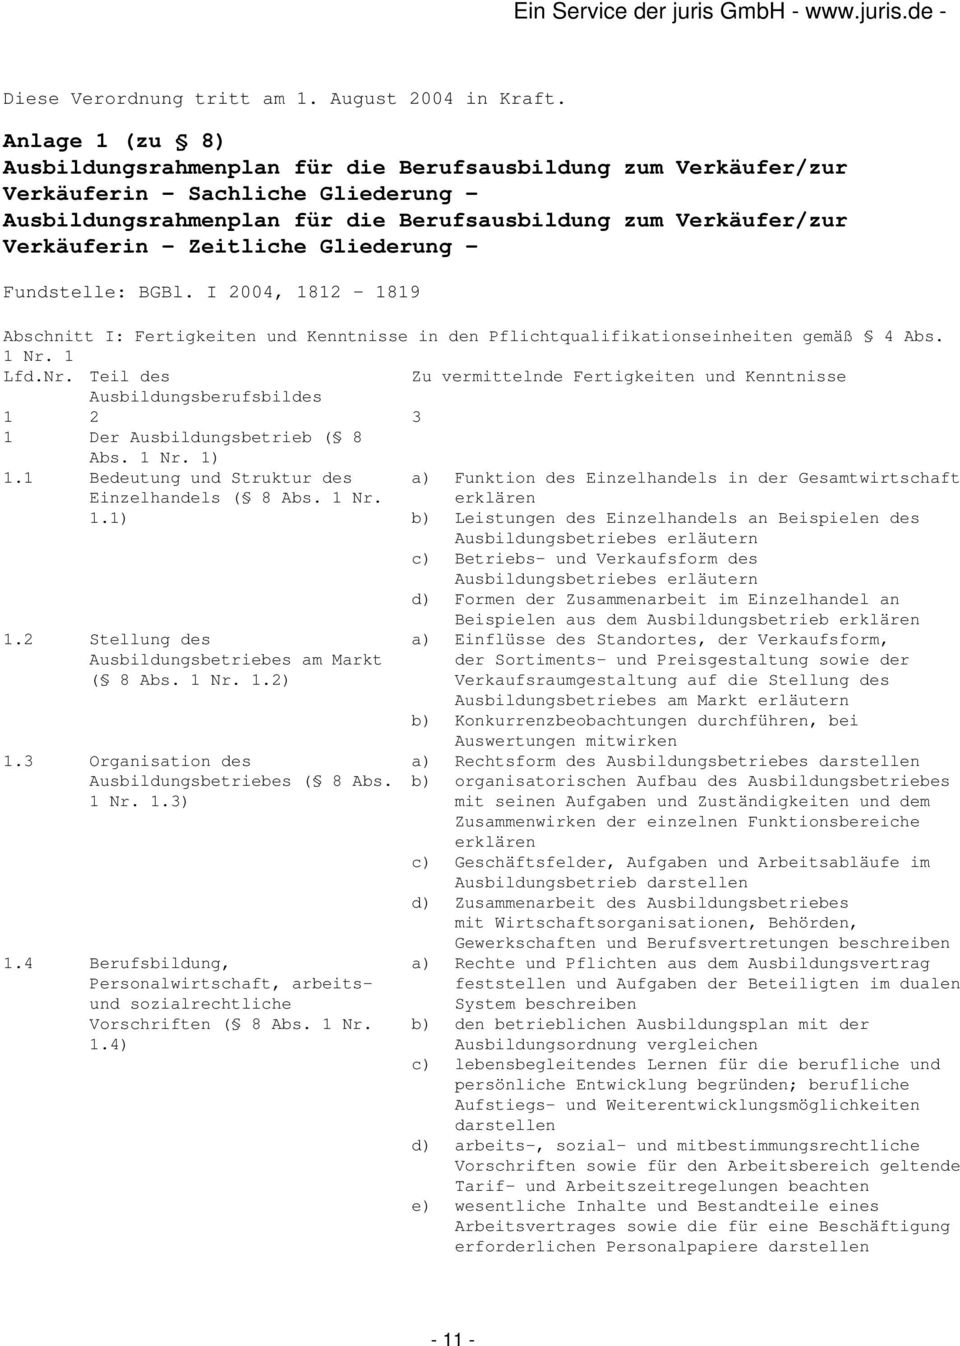 Zeitliche Gliederung - Fundstelle: BGBl. I 2004, 1812-1819 Abschnitt I: Fertigkeiten und Kenntnisse in den Pflichtqualifikationseinheiten gemäß 4 Abs. 1 Nr.